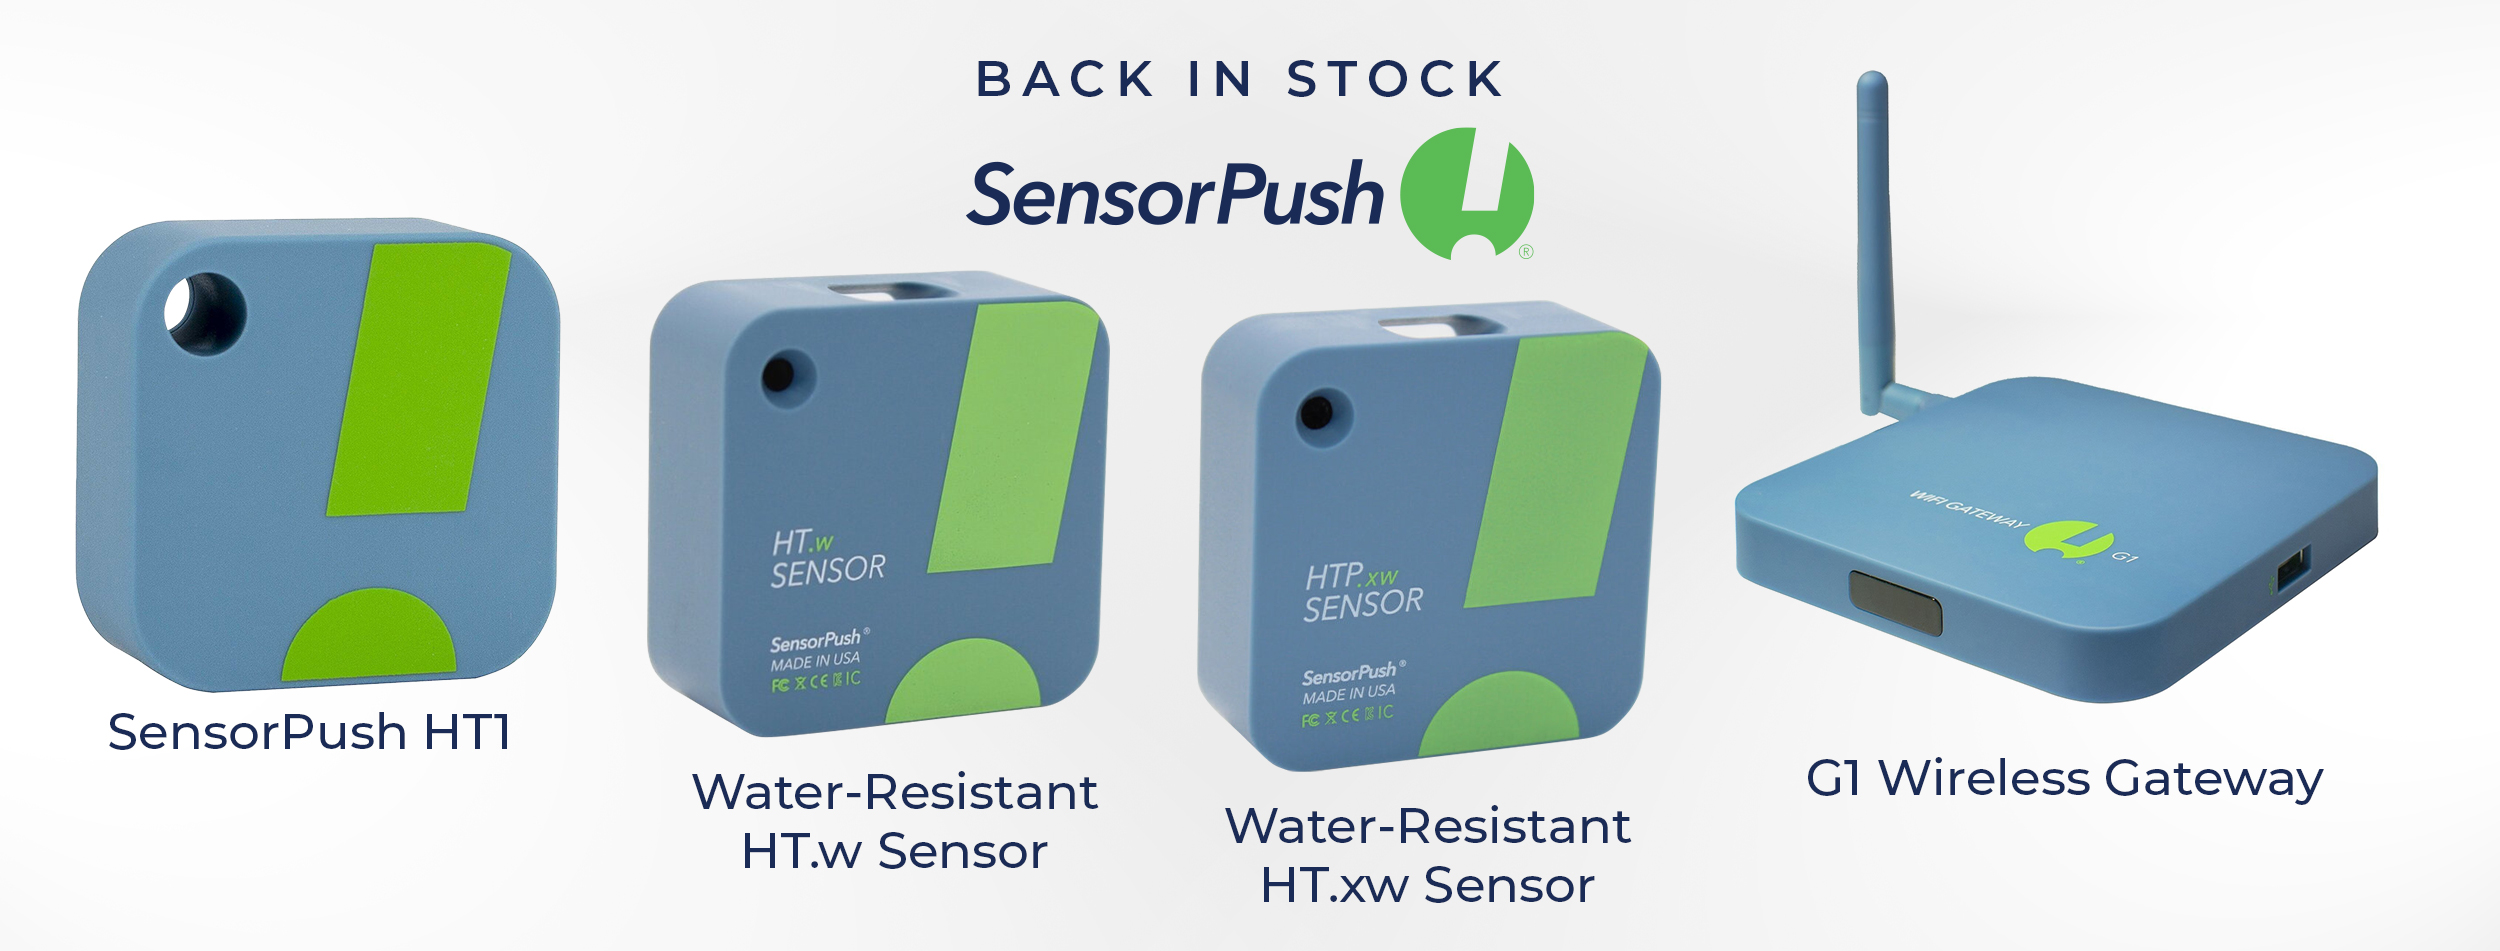 SensorPush - Back In Stock